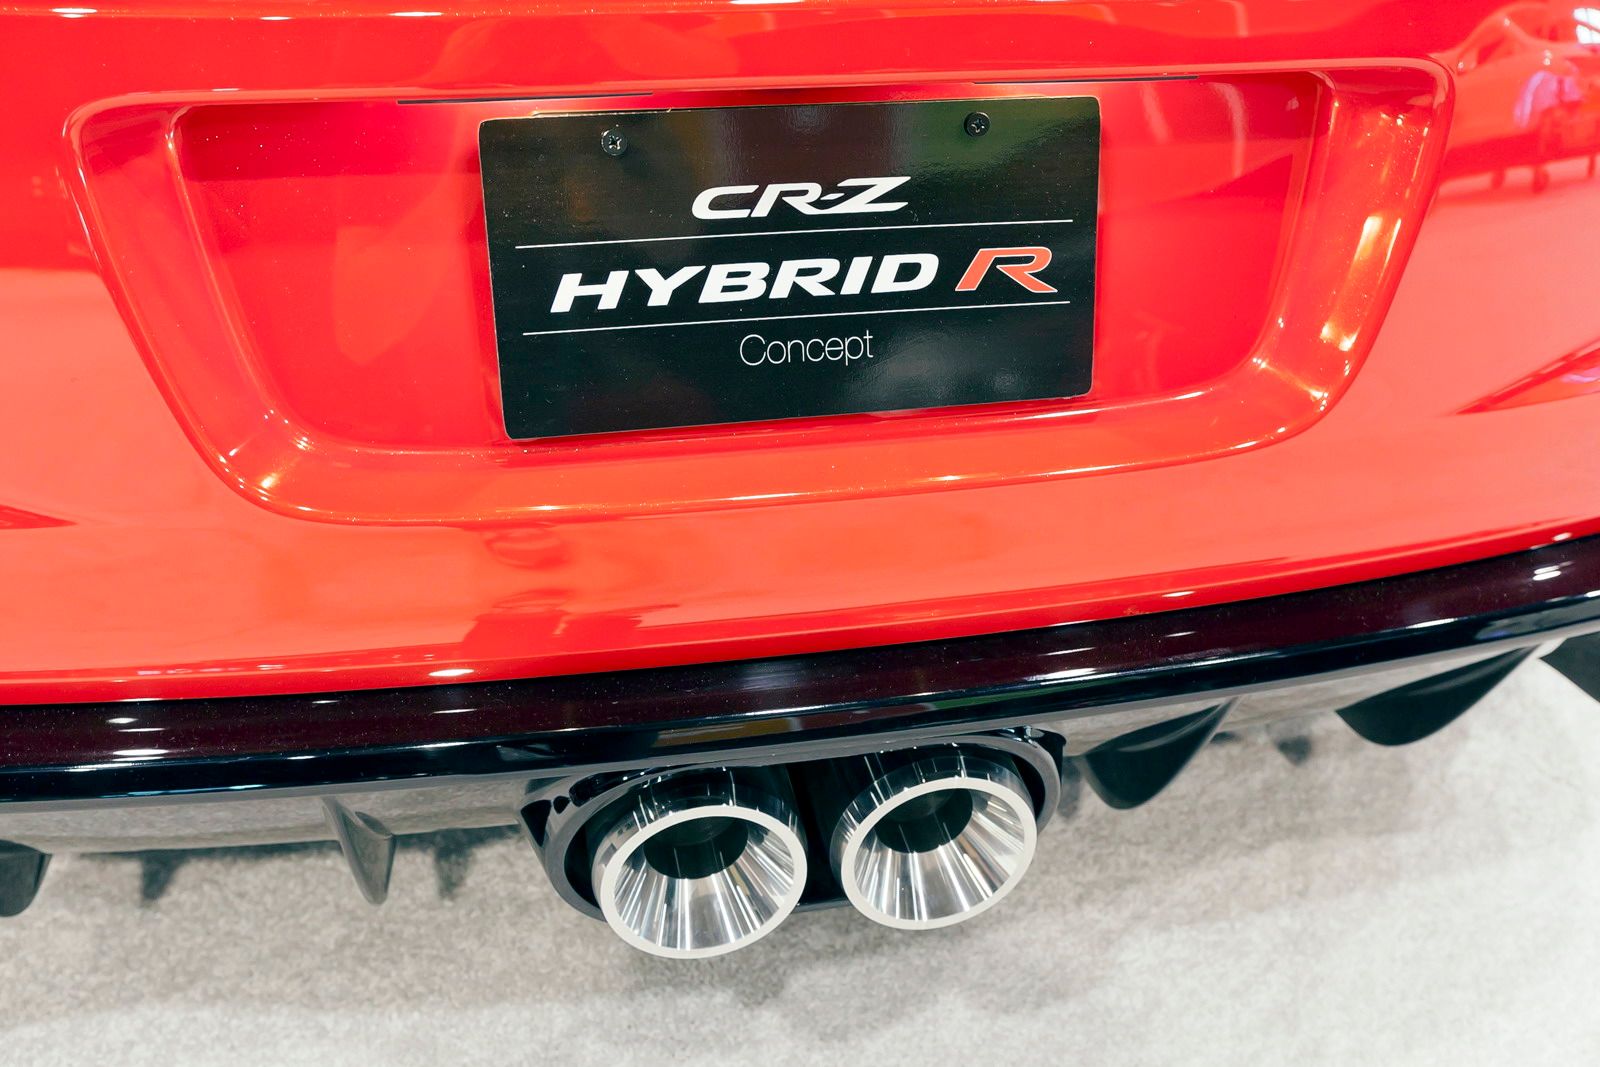 2010 Honda CR-Z Hybrid R Concept